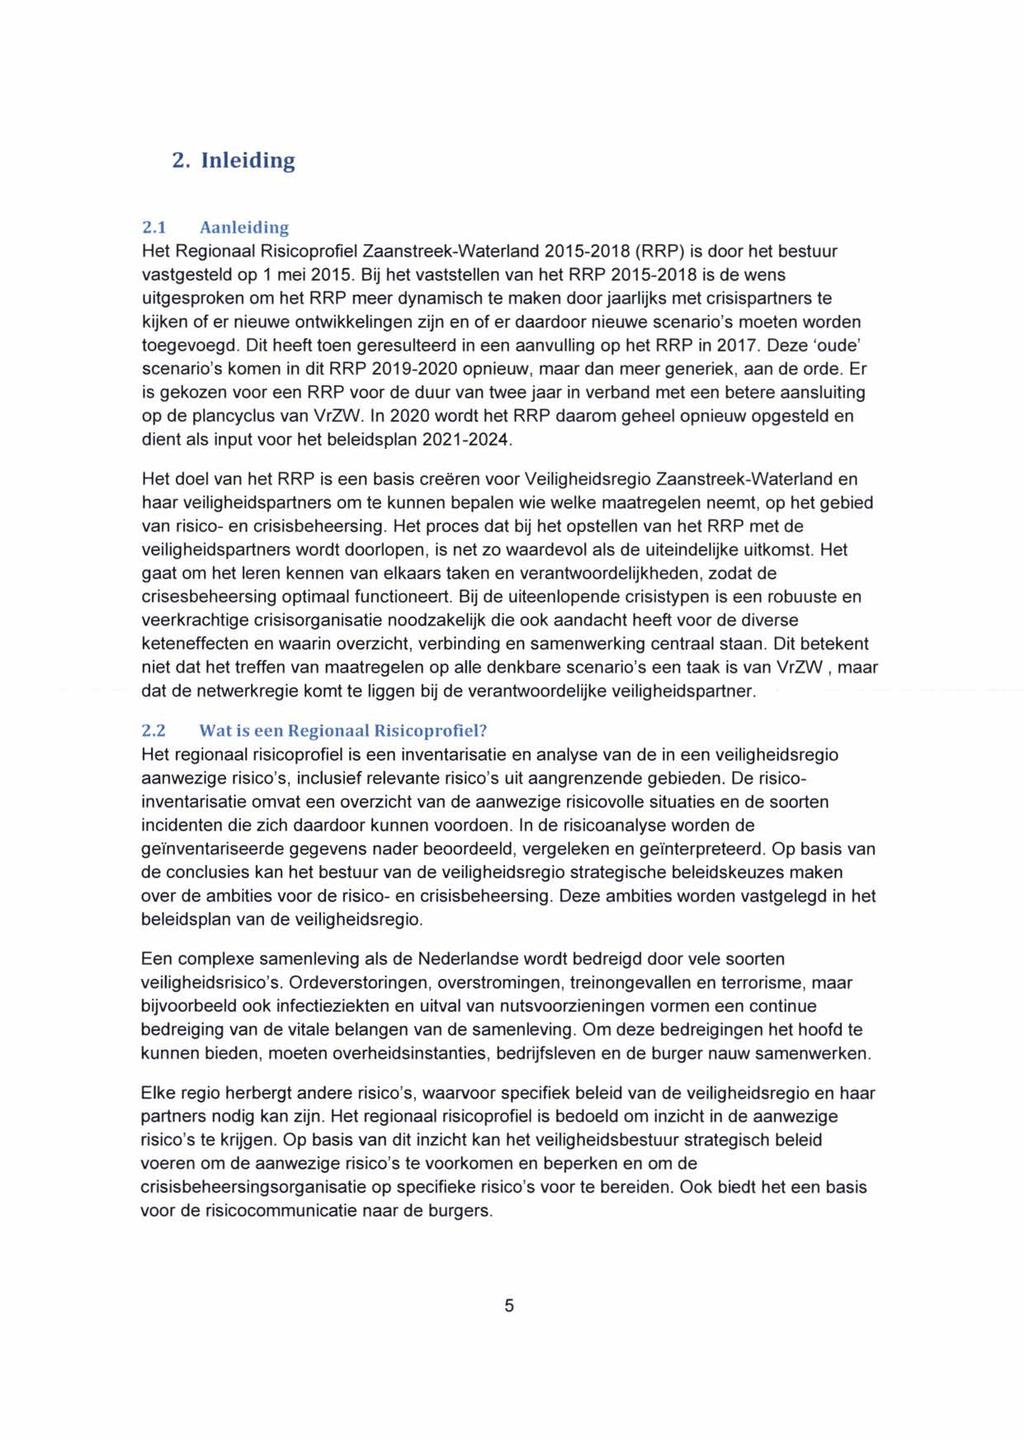 2. Inleiding 2.1 Aanleiding Het Regionaal Risicoprofiel Zaanstreek-Waterland 2015-2018 (RRP) is door het bestuur vastgesteld op 1 mei 2015.